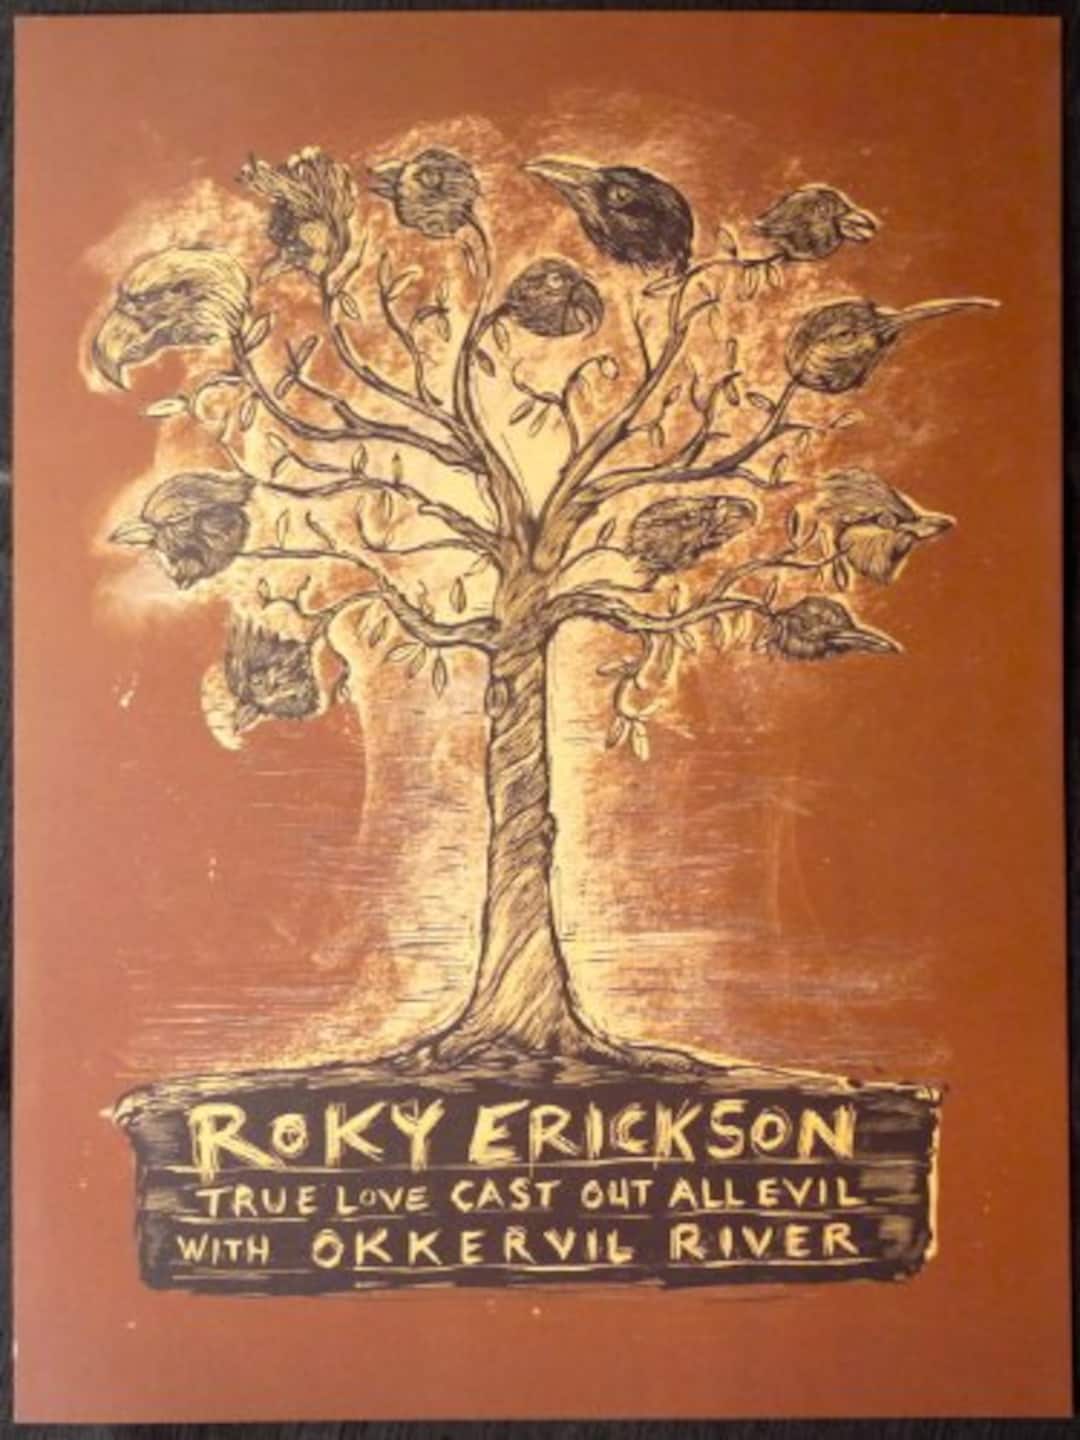 Roky Erickson True Love Cast Out All Evil Album Cover Sticker